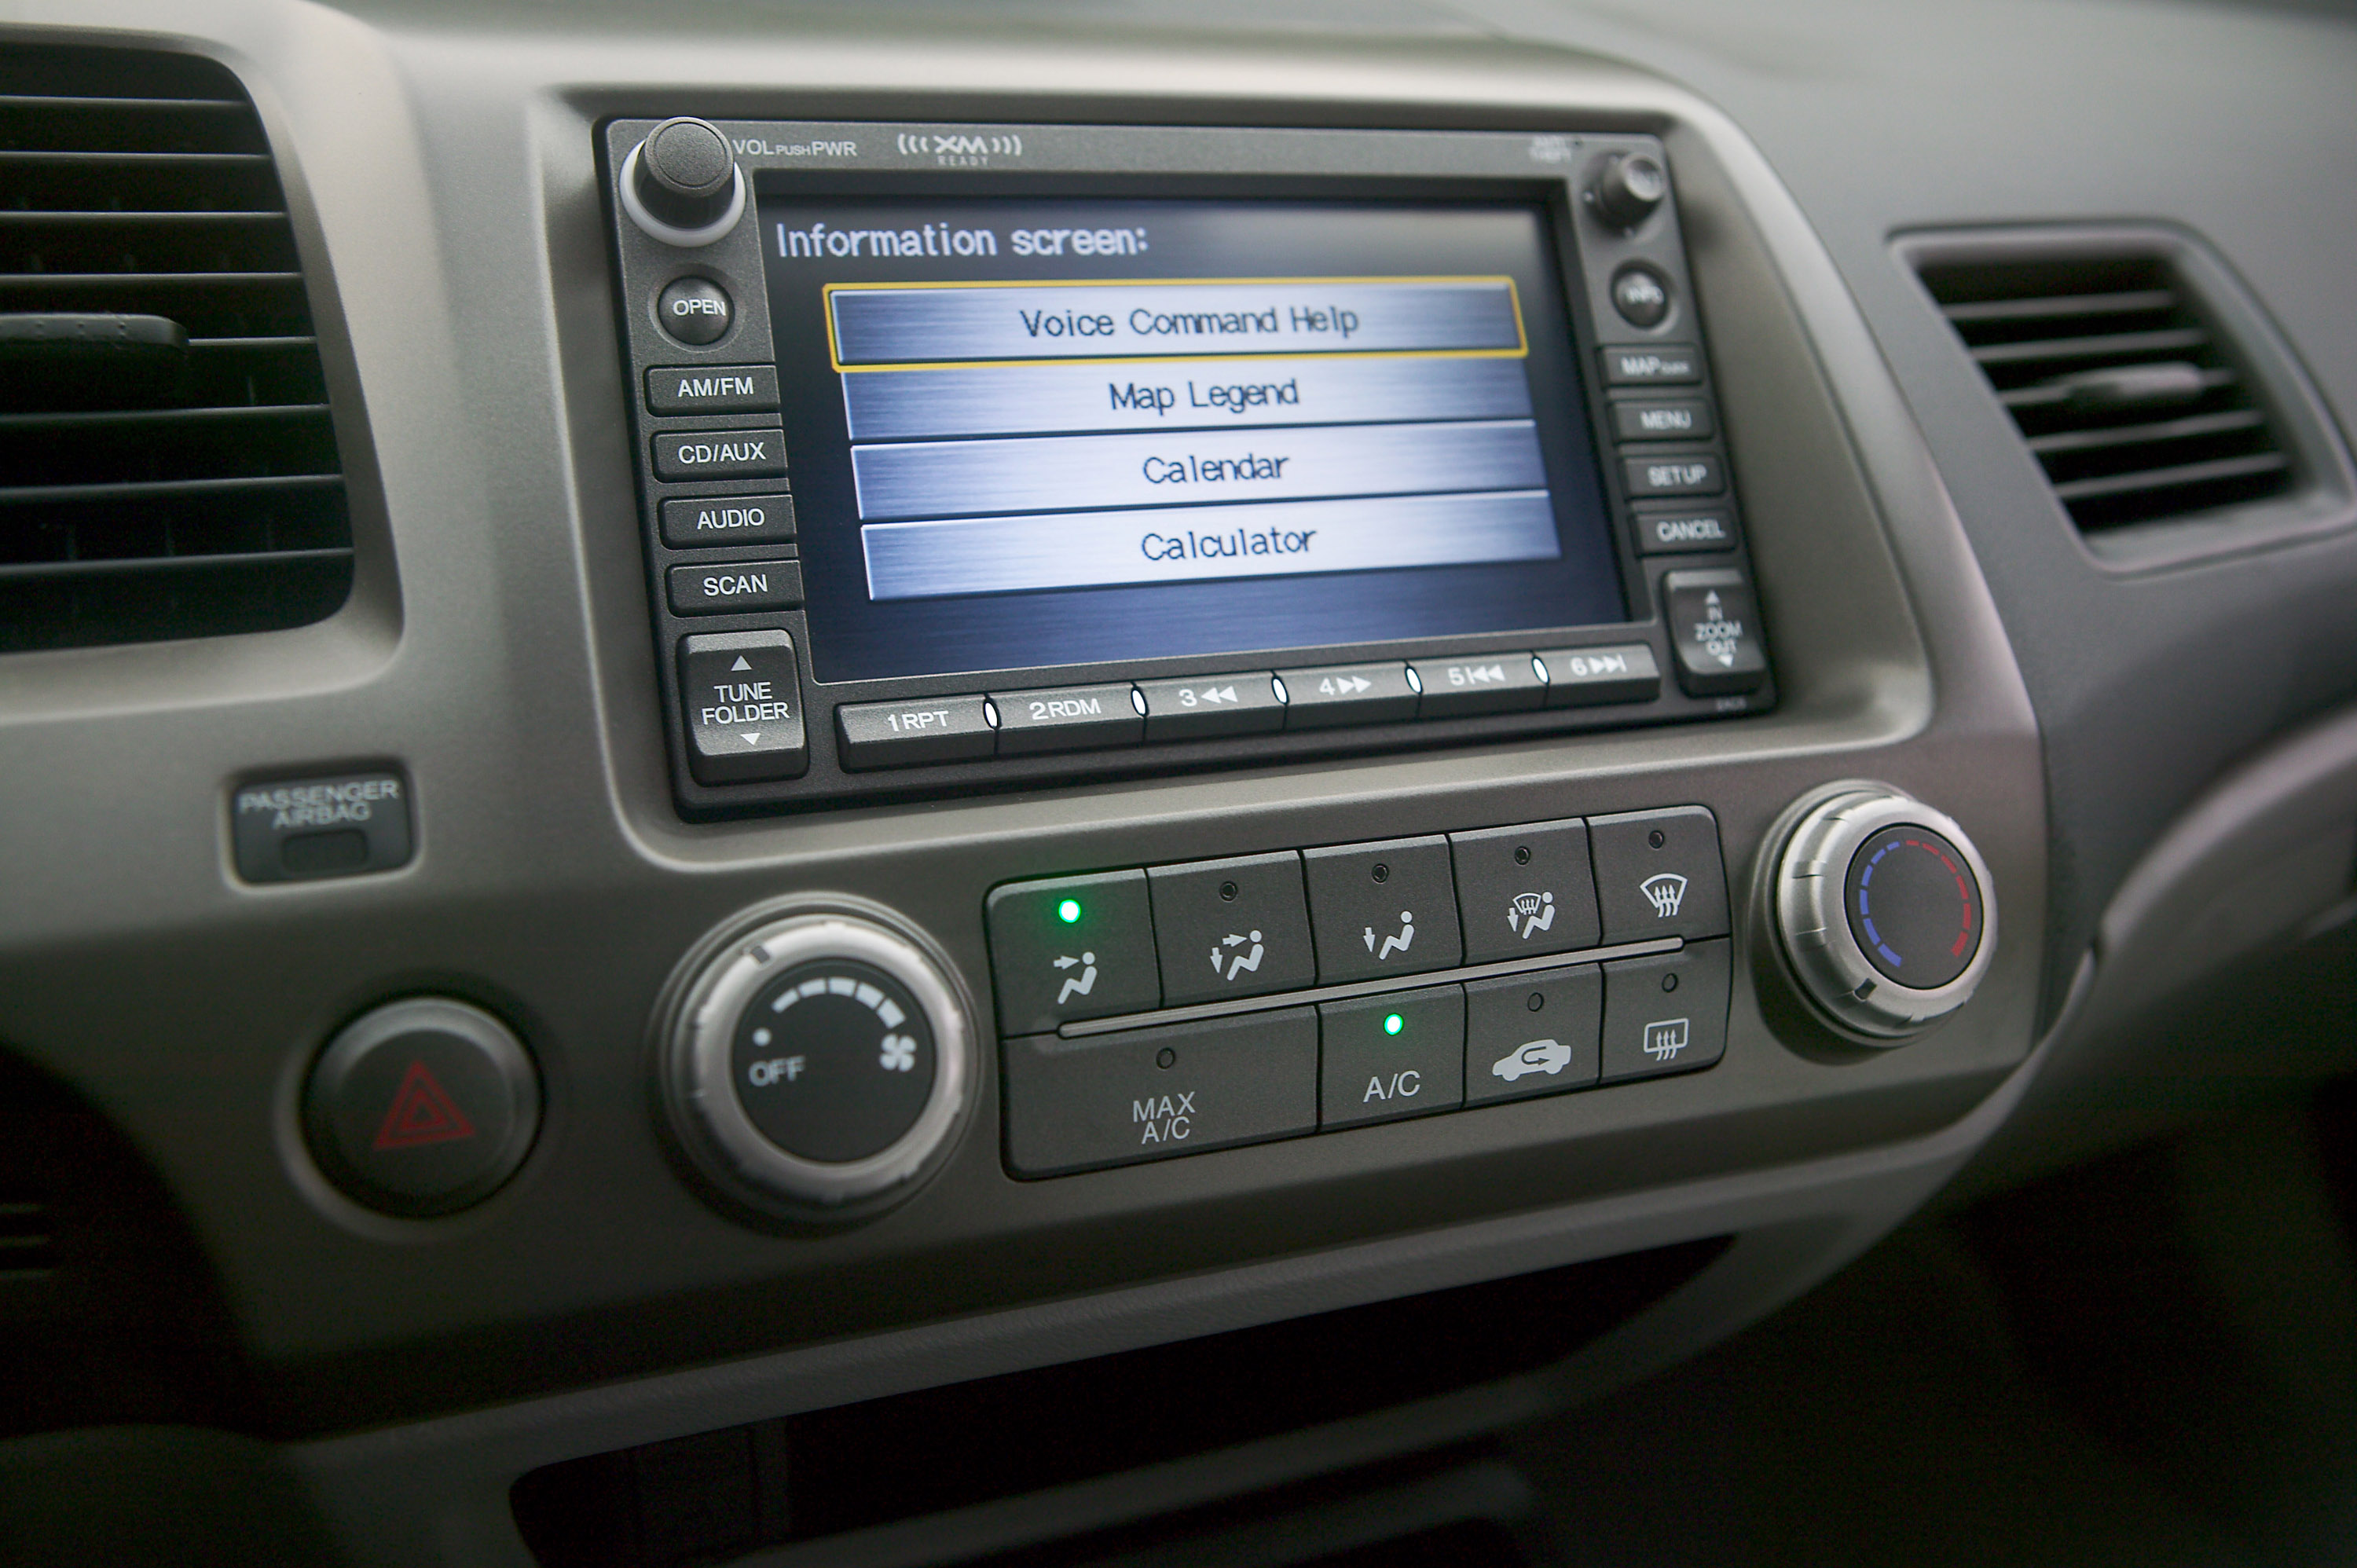 Honda Civic Coupe 2008 - Picture 5351 stereo wiring for mazda miata 